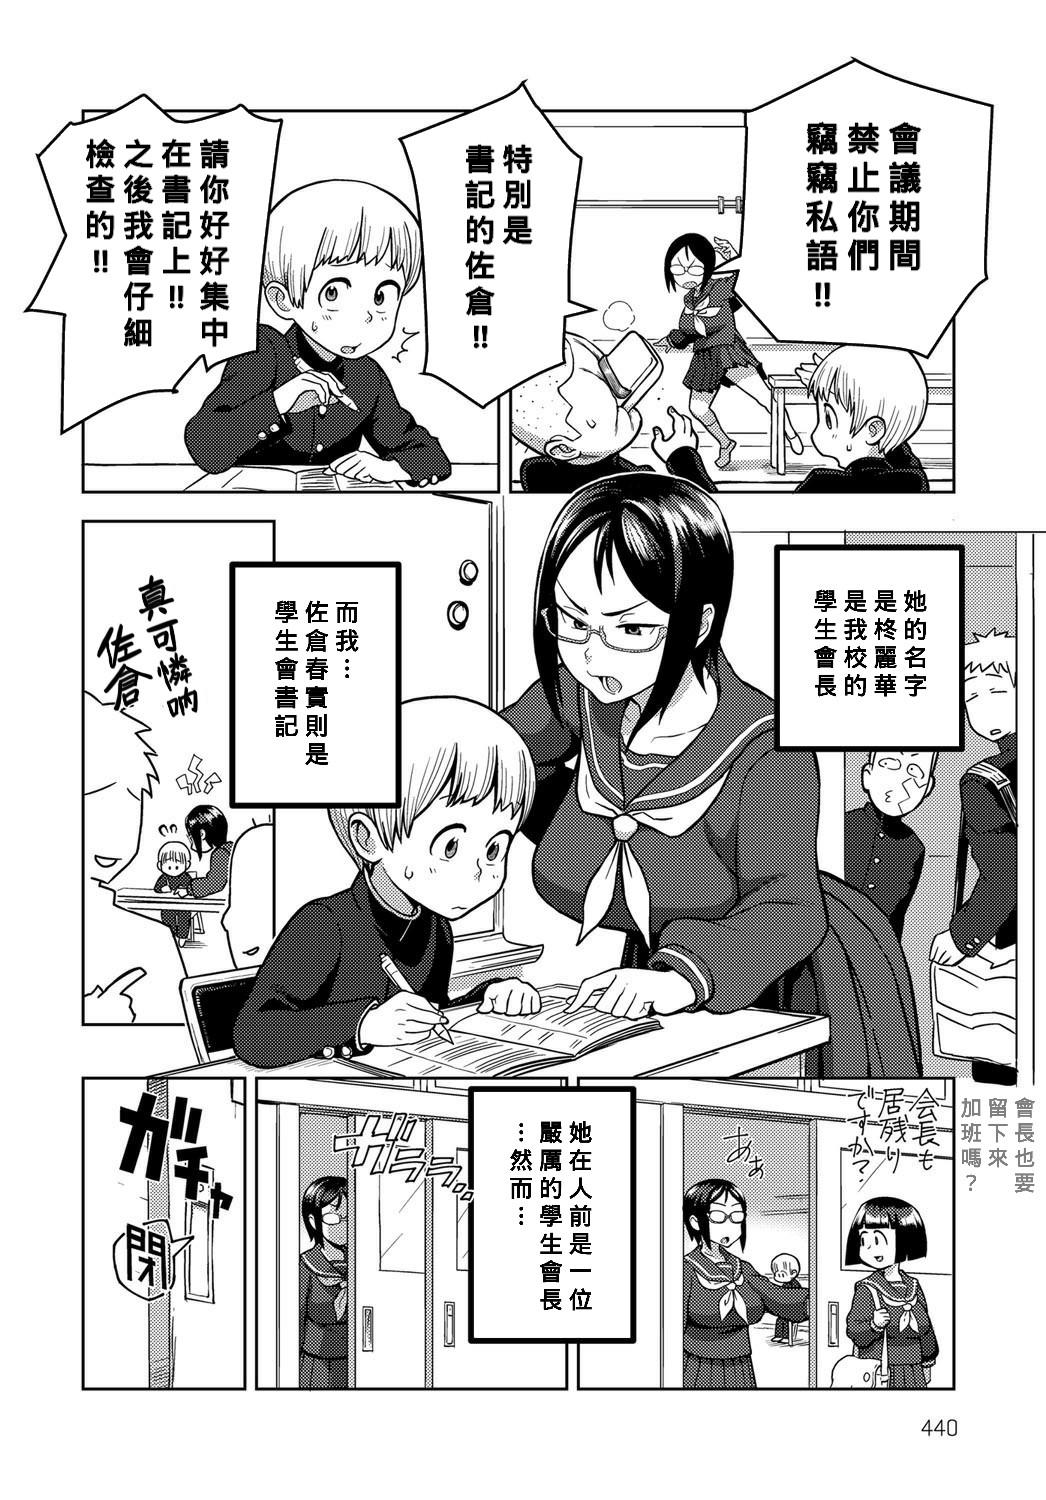 Kashima Houkago Meeting Tetas - Page 2